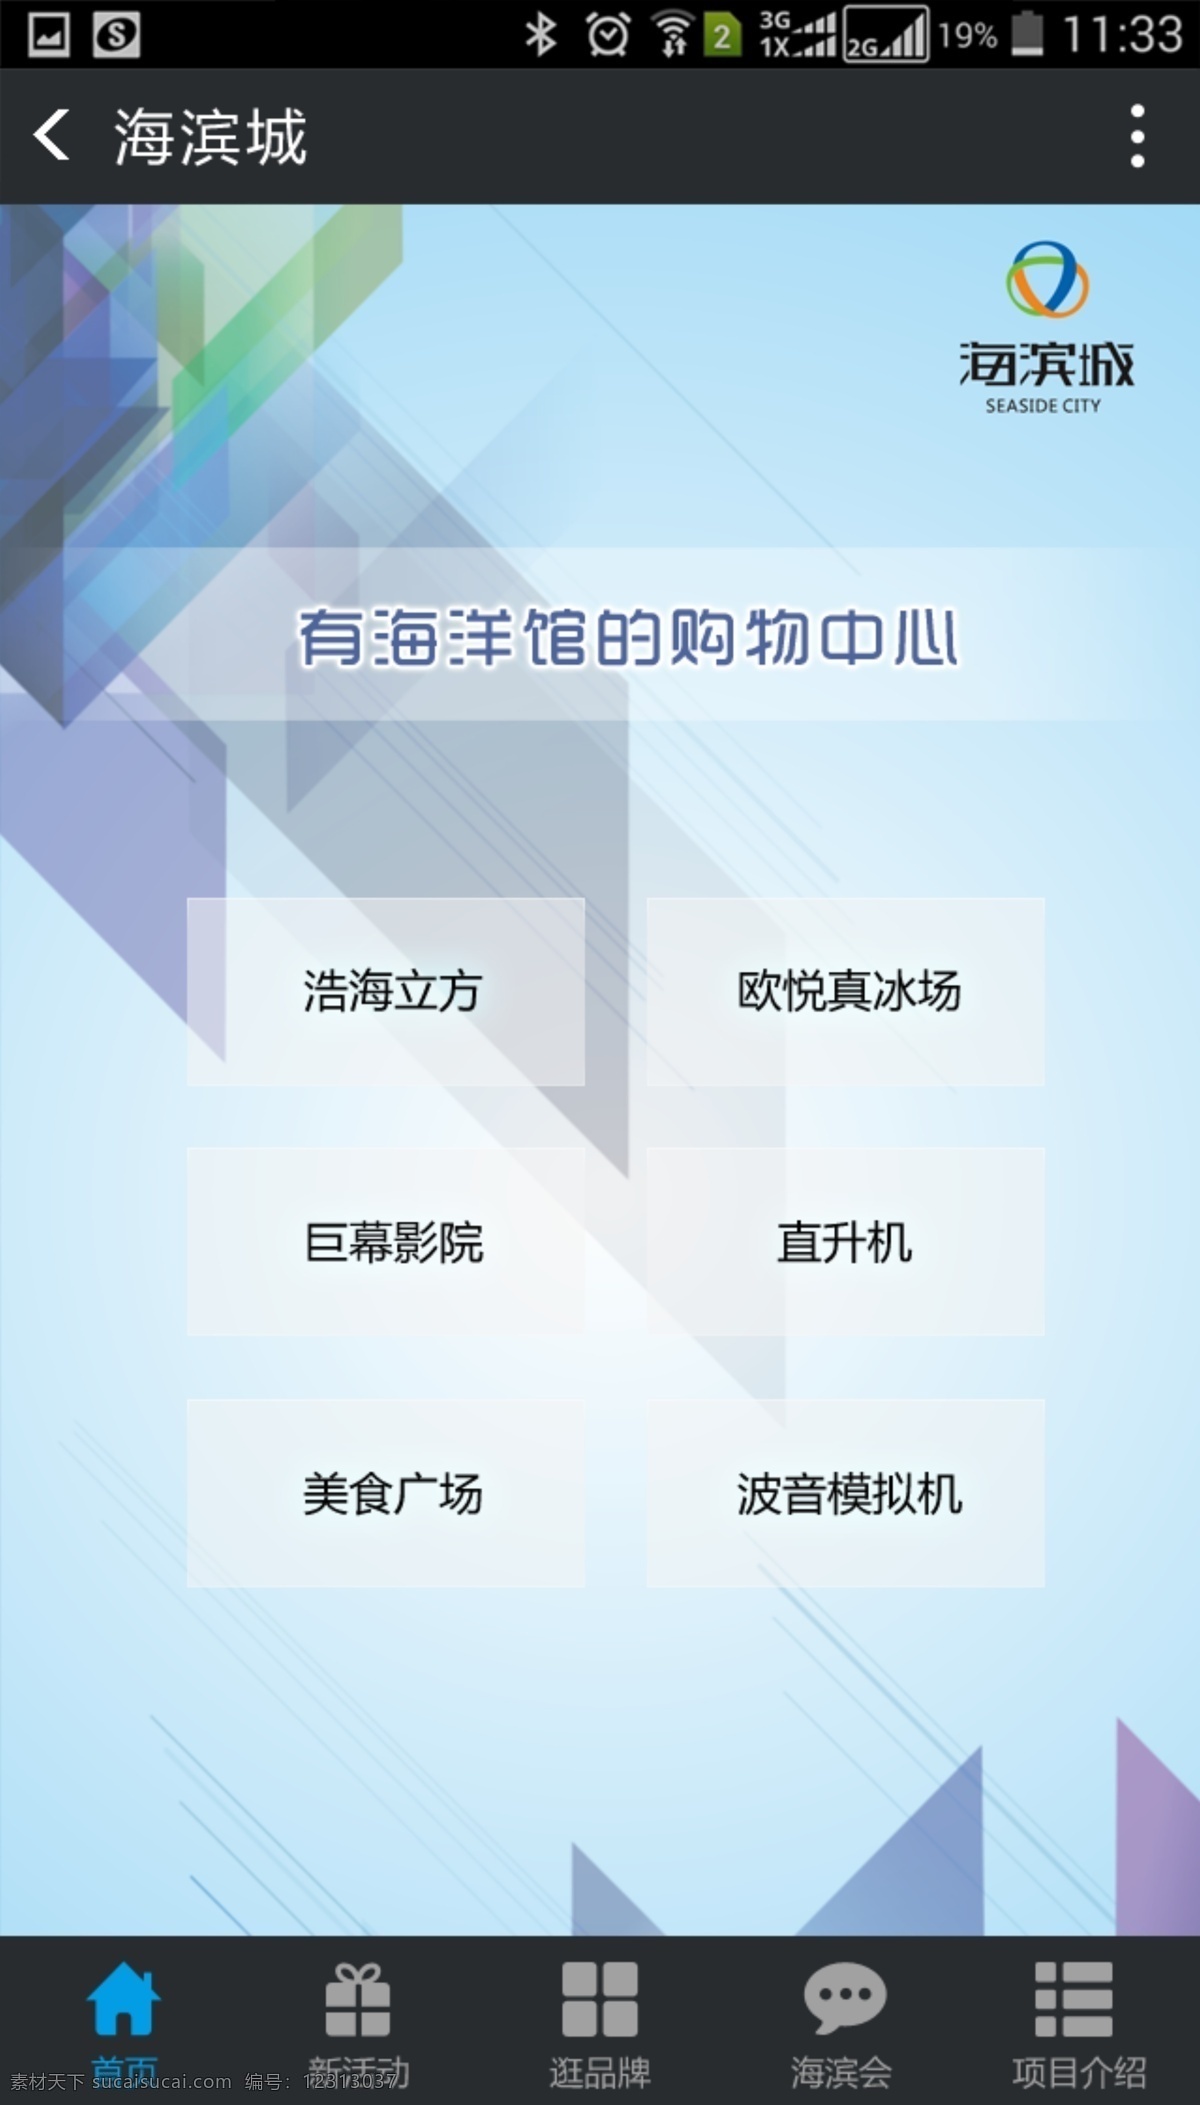 海滨城 微 网站首页 建筑 app 微站 科技 立体 天空 分层 白色